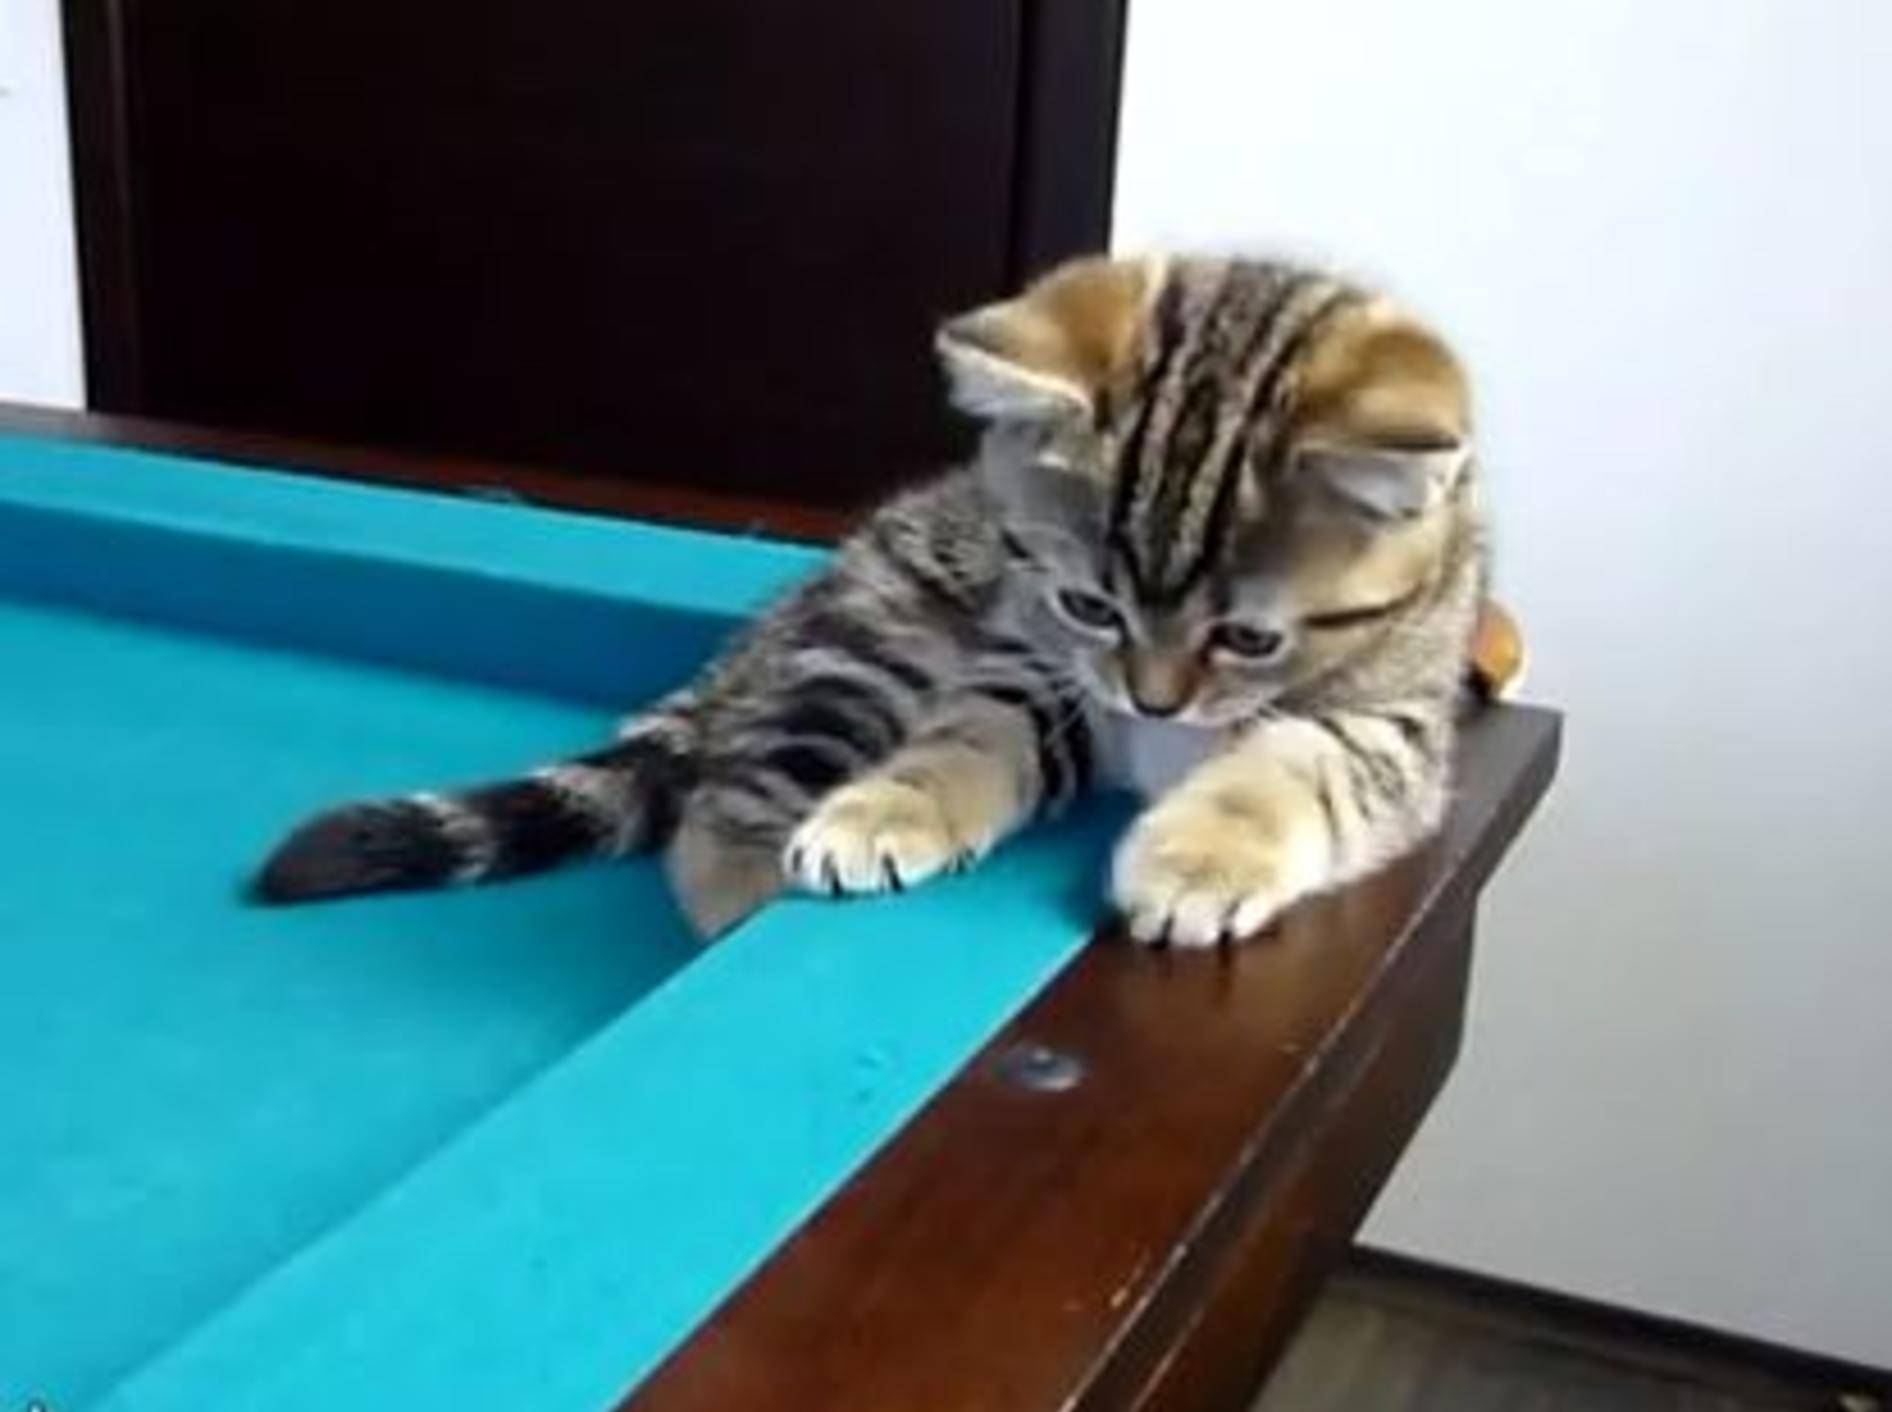 Süße Katzenbabys stürmen einen Billard-Tisch — Bild: Youtube / Funnycatsandnicefish